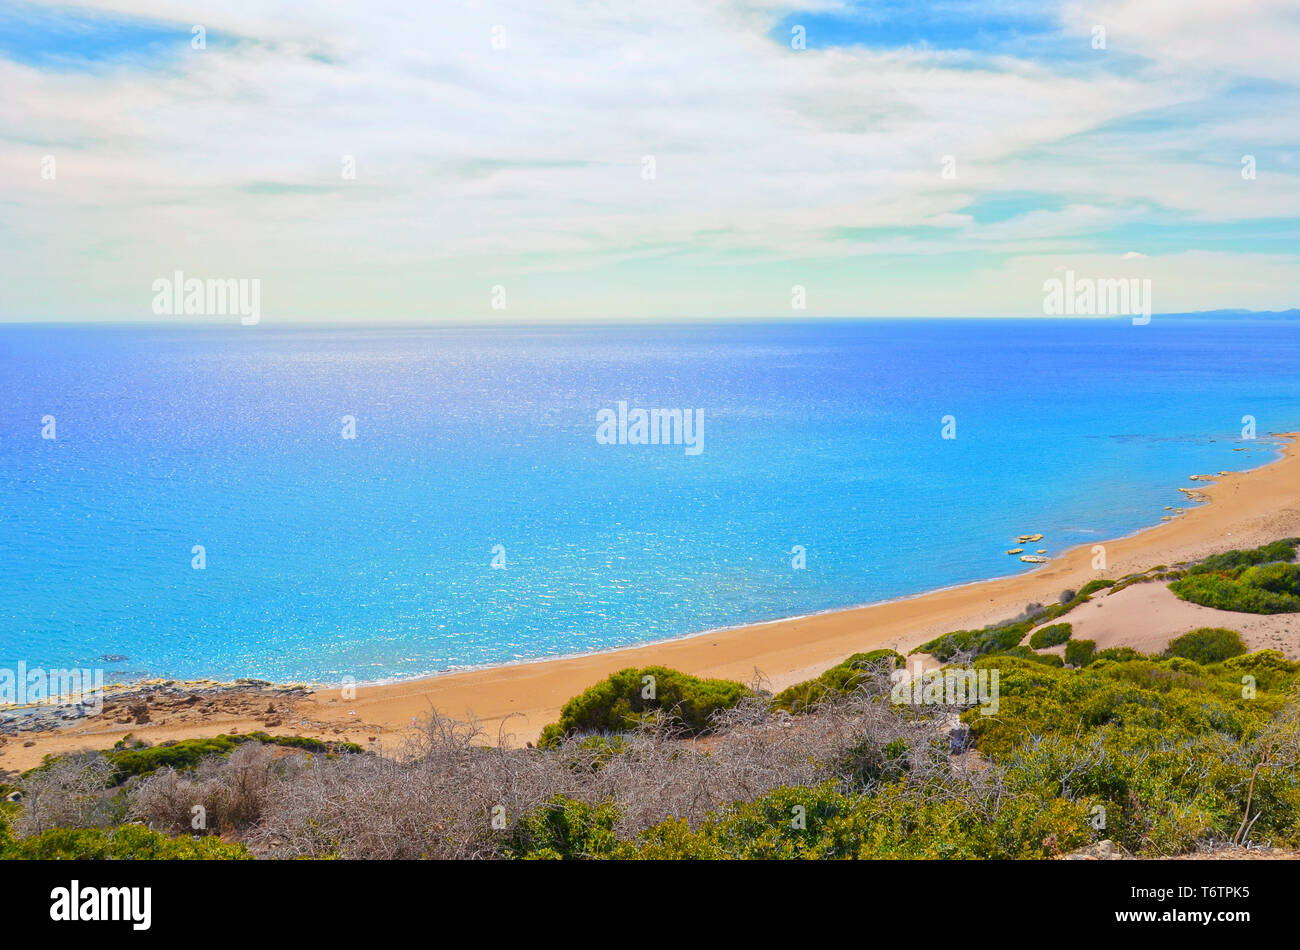 Bellissima spiaggia vuota nella zona settentrionale turca di Cipro prendere contro il sole. Il luogo remoto è Golden Beach nella penisola di Karpas. Incredibile la destinazione per le vacanze estive senza molti turisti. Foto Stock